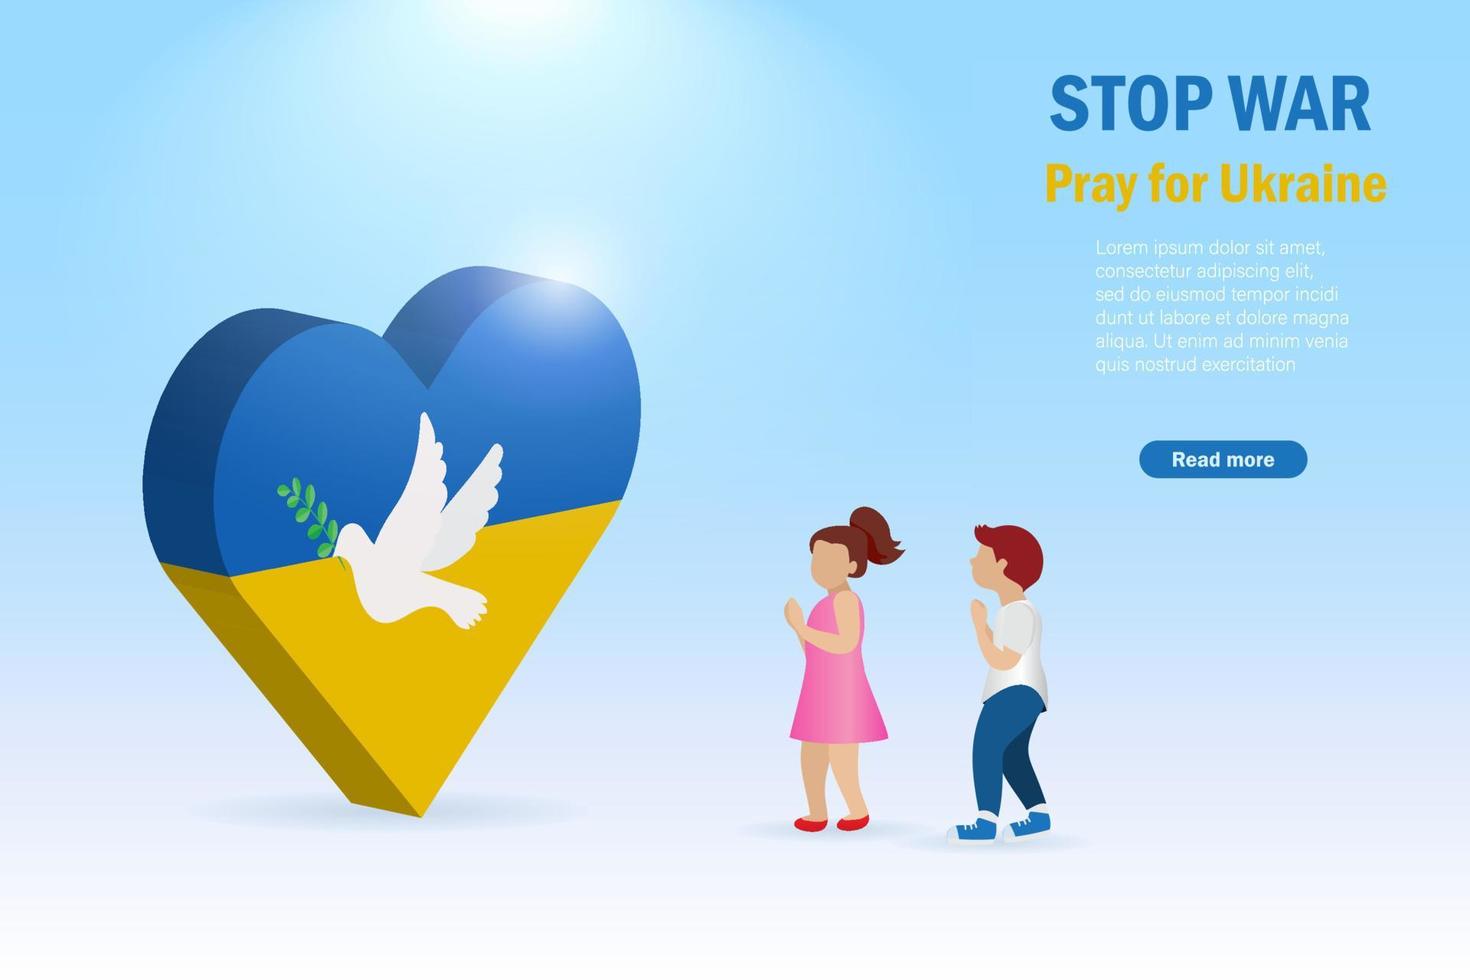 pare a guerra, ore pelo conceito da ucrânia. crianças rezando pela ucrânia com pombo voador, símbolo de paz e liberdade. protesto internacional para parar a agressão contra a ucrânia. vetor